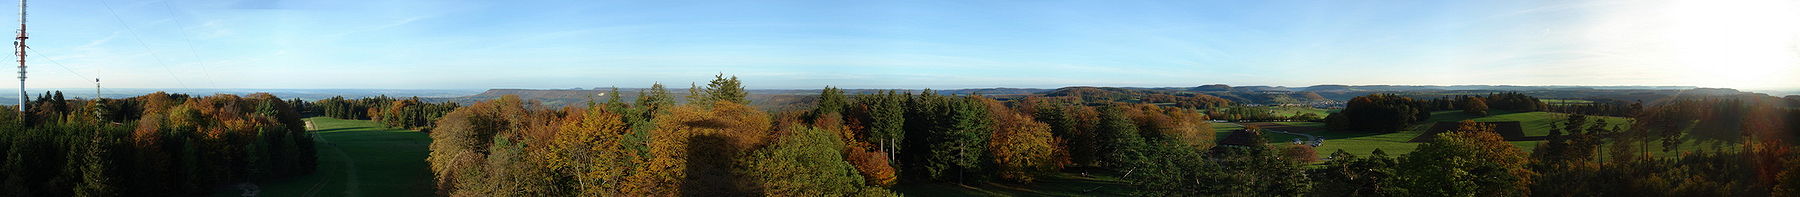 Rundblick vom Aussichtsturm Raichberg: Links im Westen der Sendeturm, in der Mitte der Dreifürstenstein, rechts im Süden Onstmettingen mit dem Schmiecha-Tal